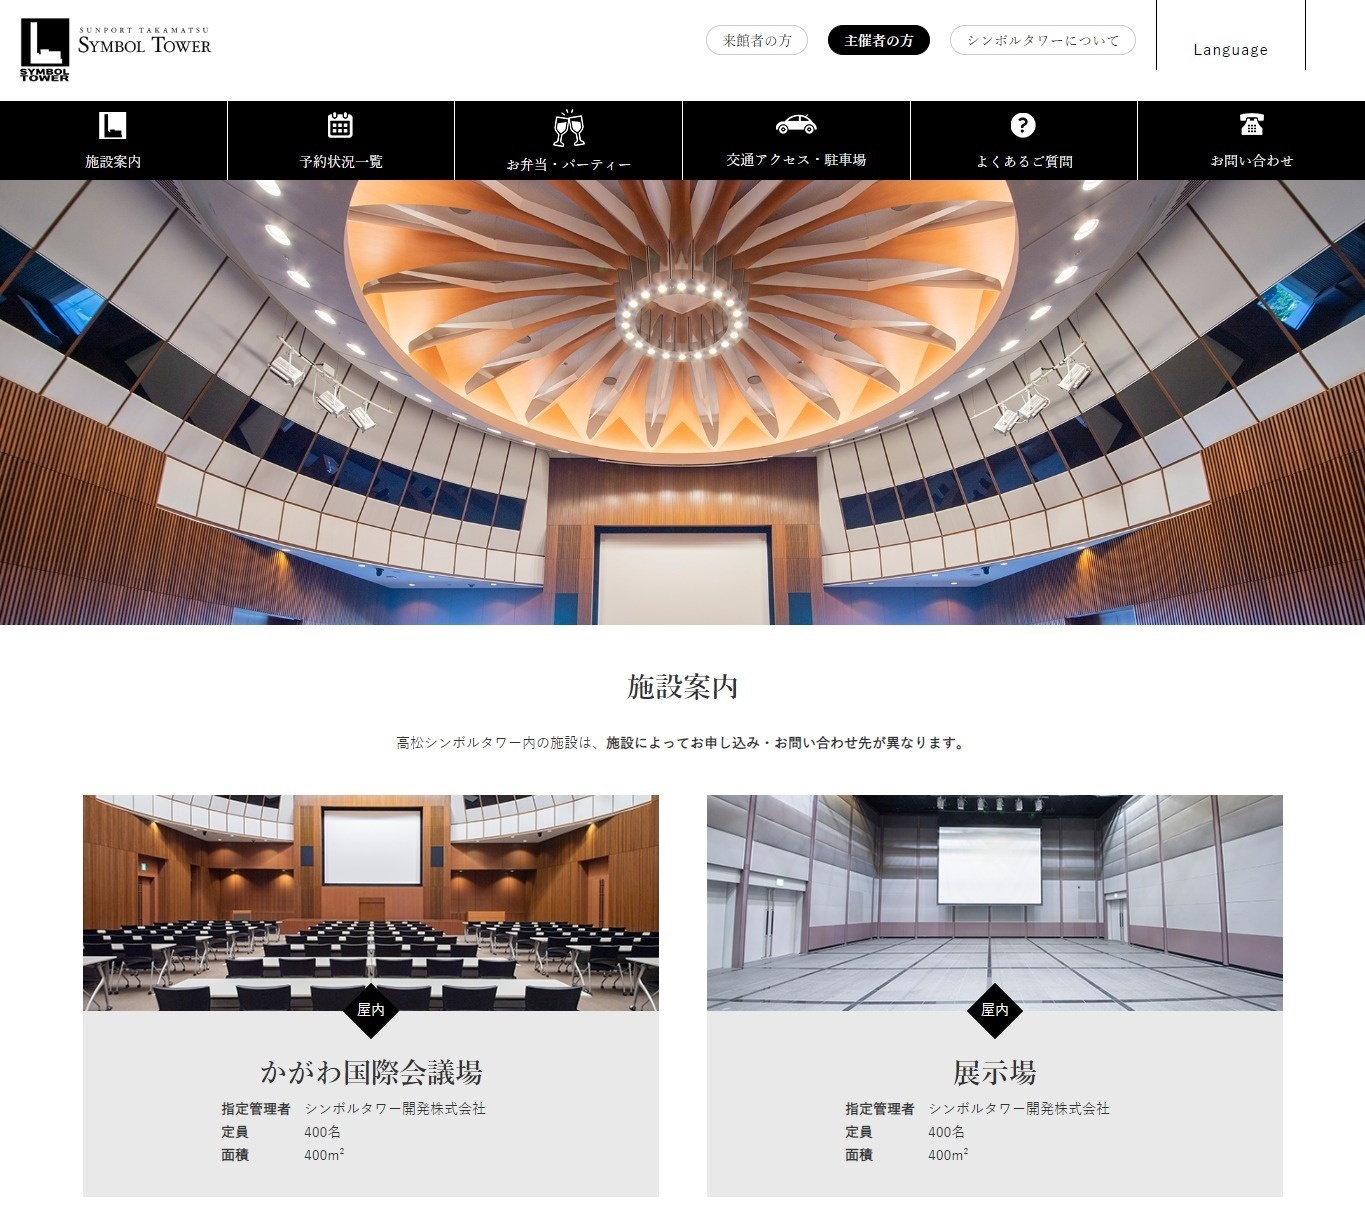 高松シンボルタワー管理協議会様が運営管理する「高松シンボルタワー」のホームページ　主催者向けのページ